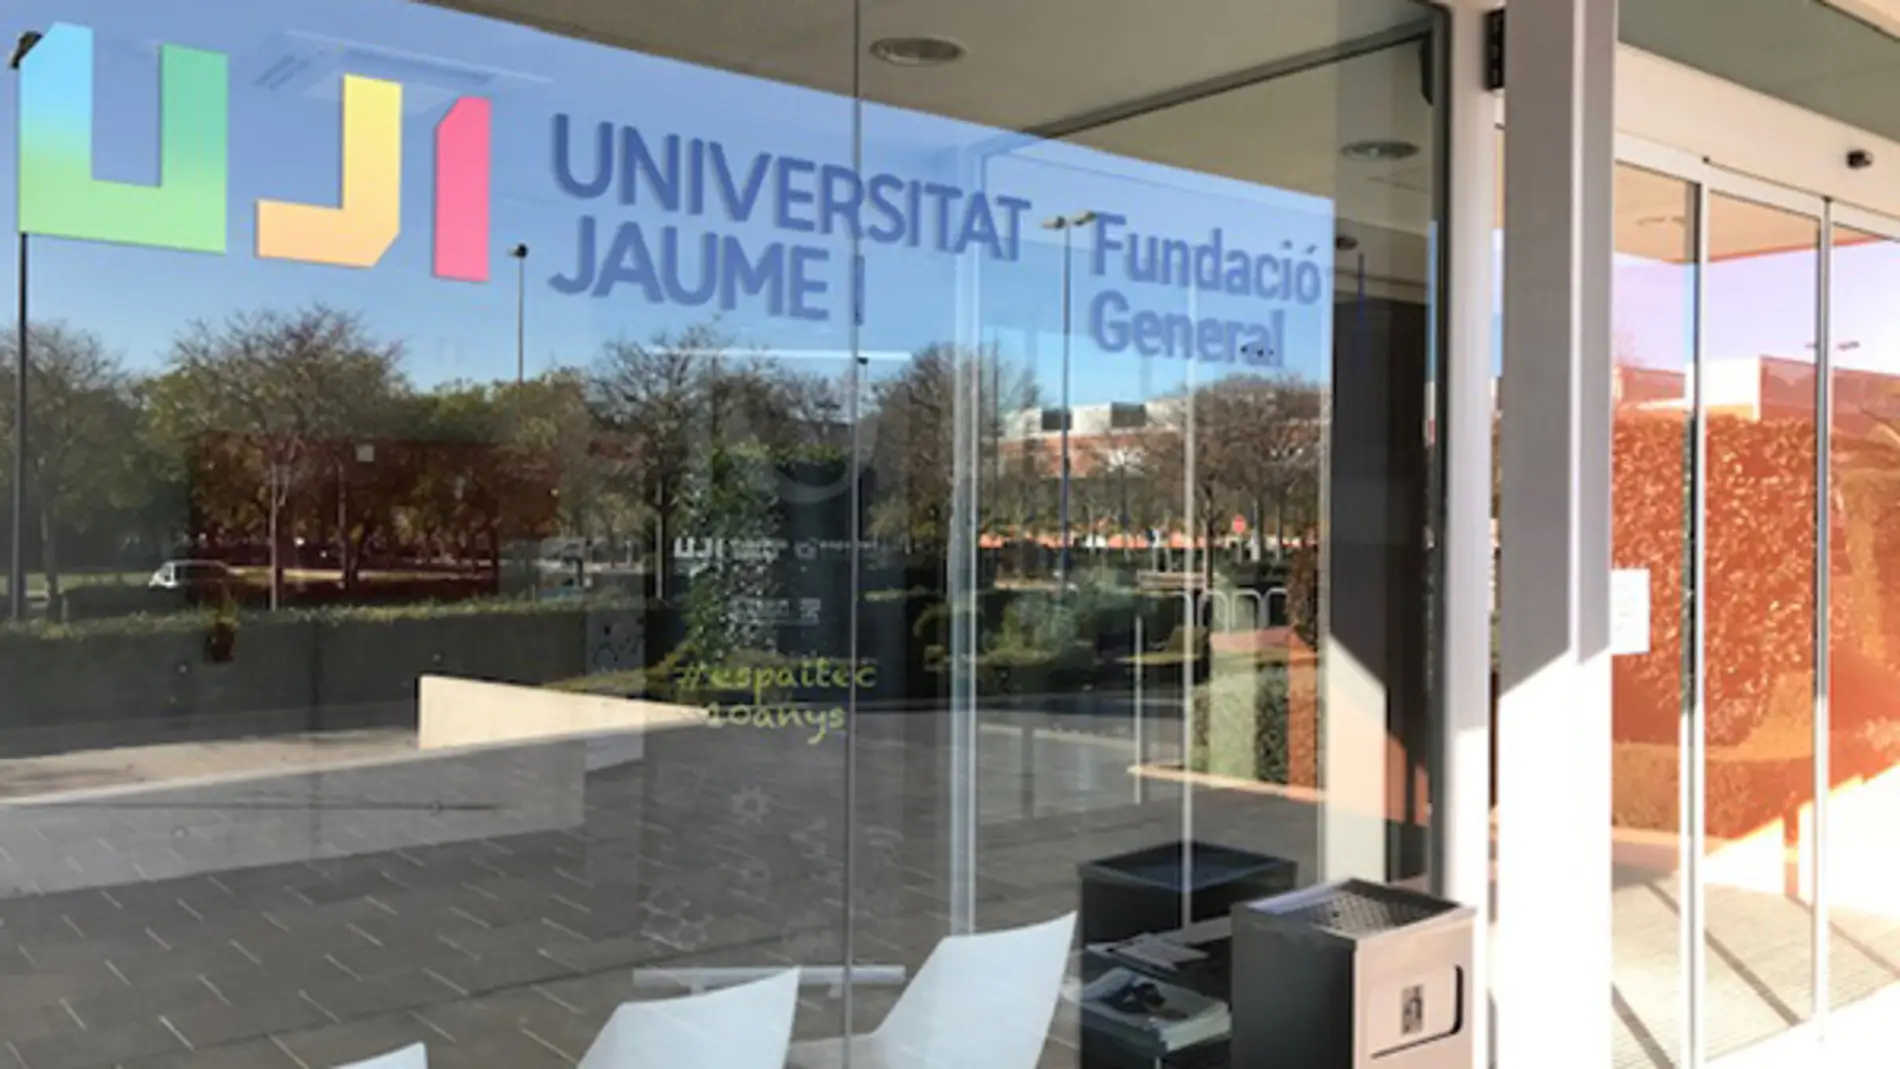 La Fundación General de la Universitat Jaume I se incorpora al Club Innovación Comunidad Valenciana 